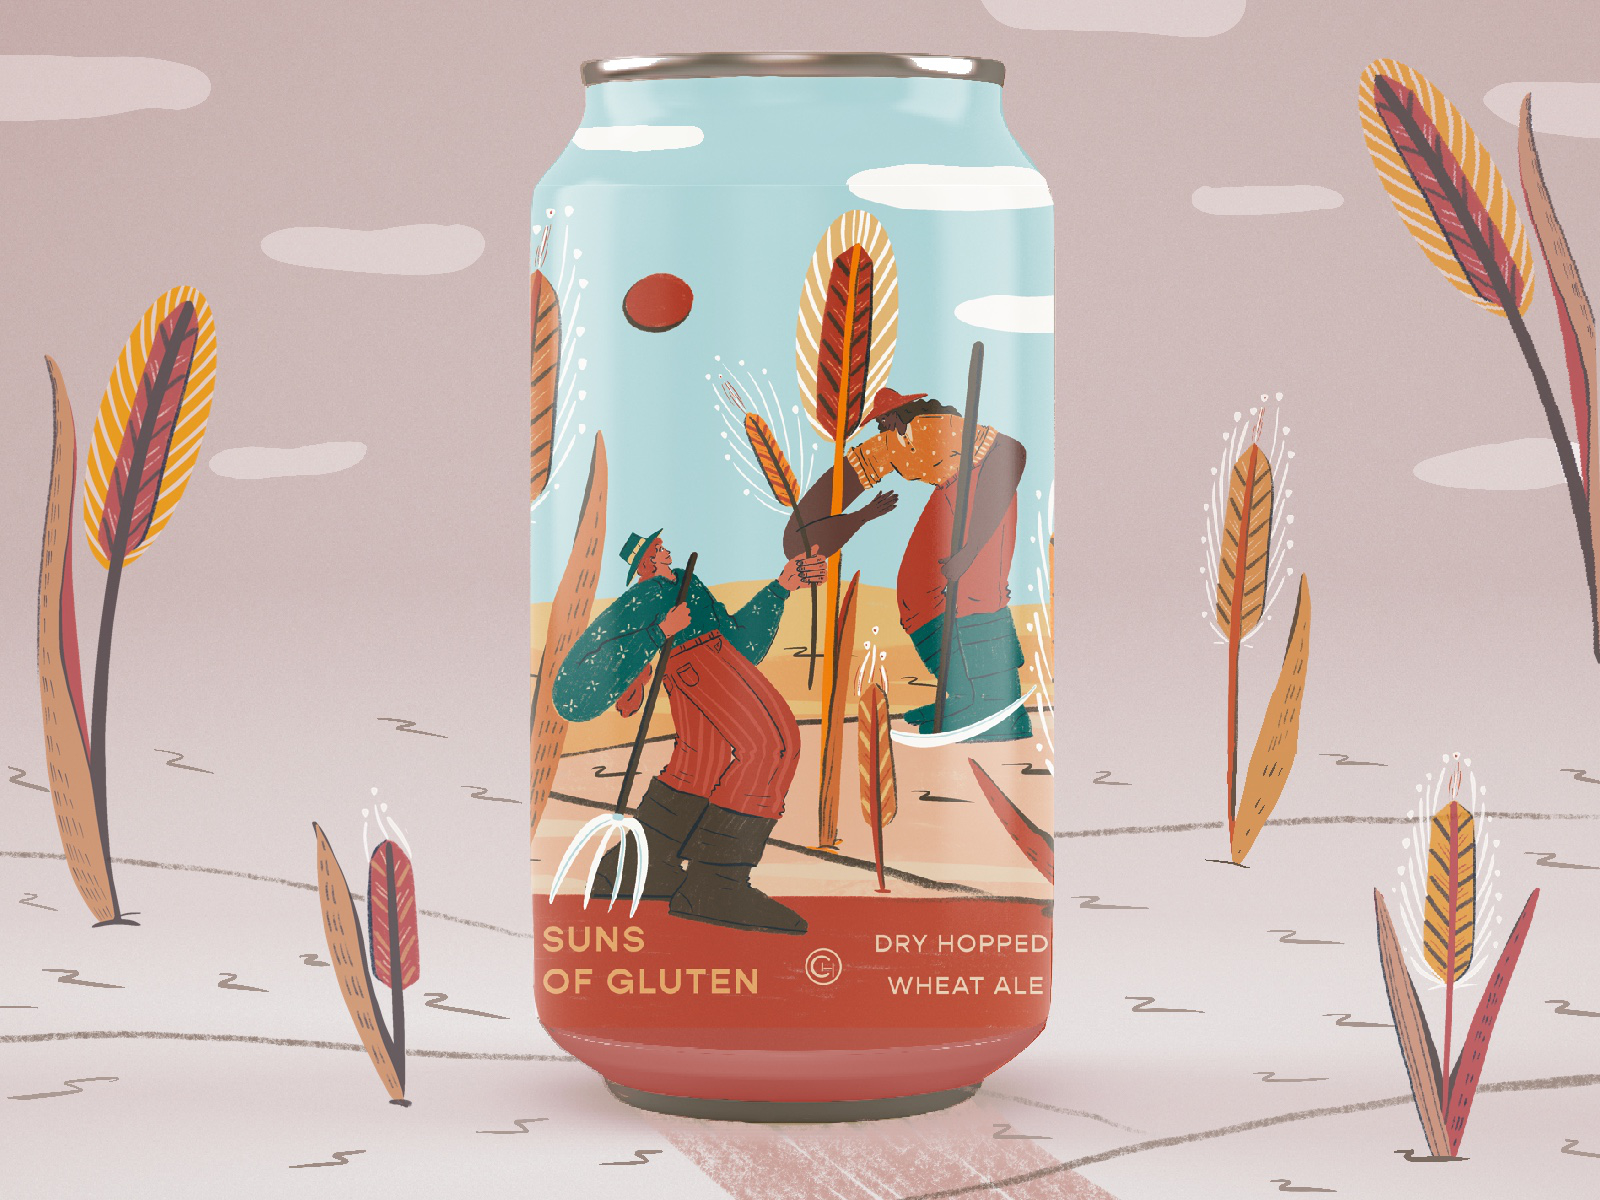 Beer Label Illustration